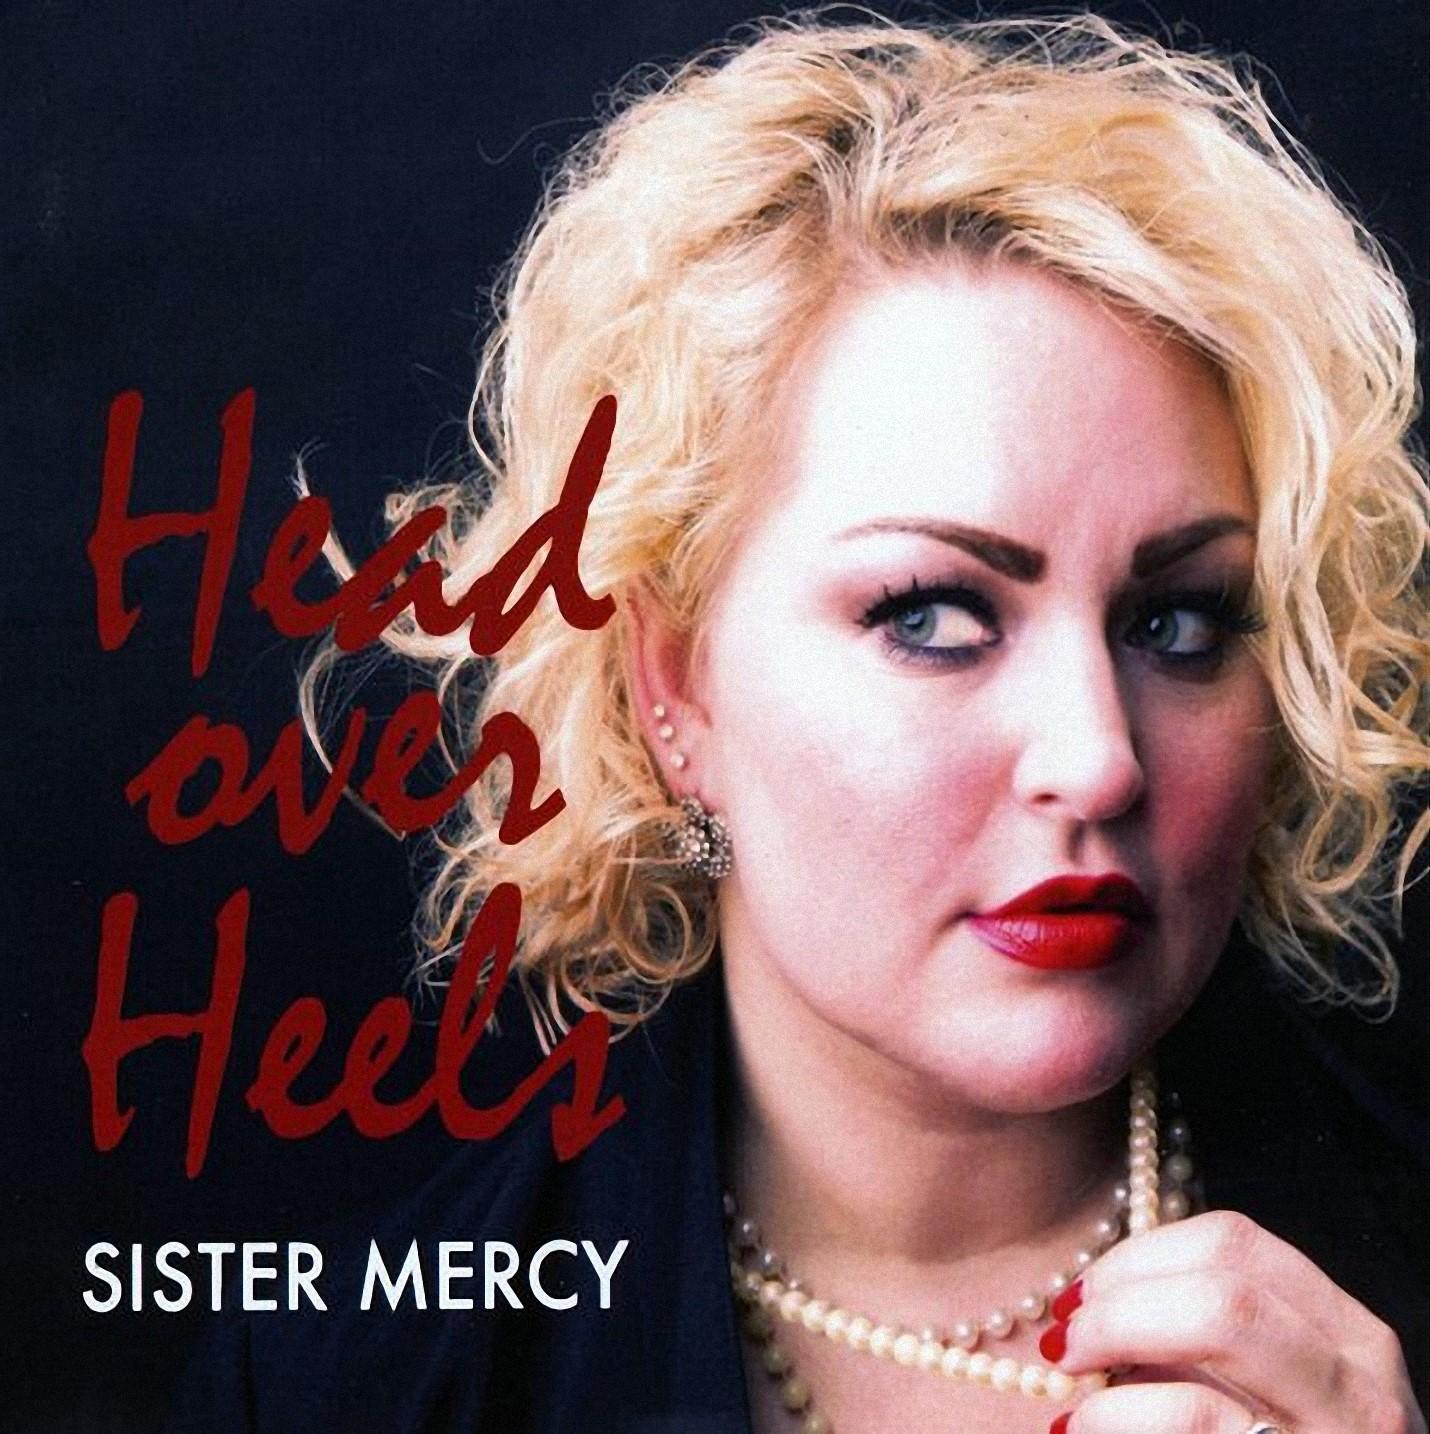 Sister mercy onsa. Sister Mercy head over Heels 2014. Sister Mercy Diamonds 2018. Sisters of Mercy. Sister Mercy кто она такая.